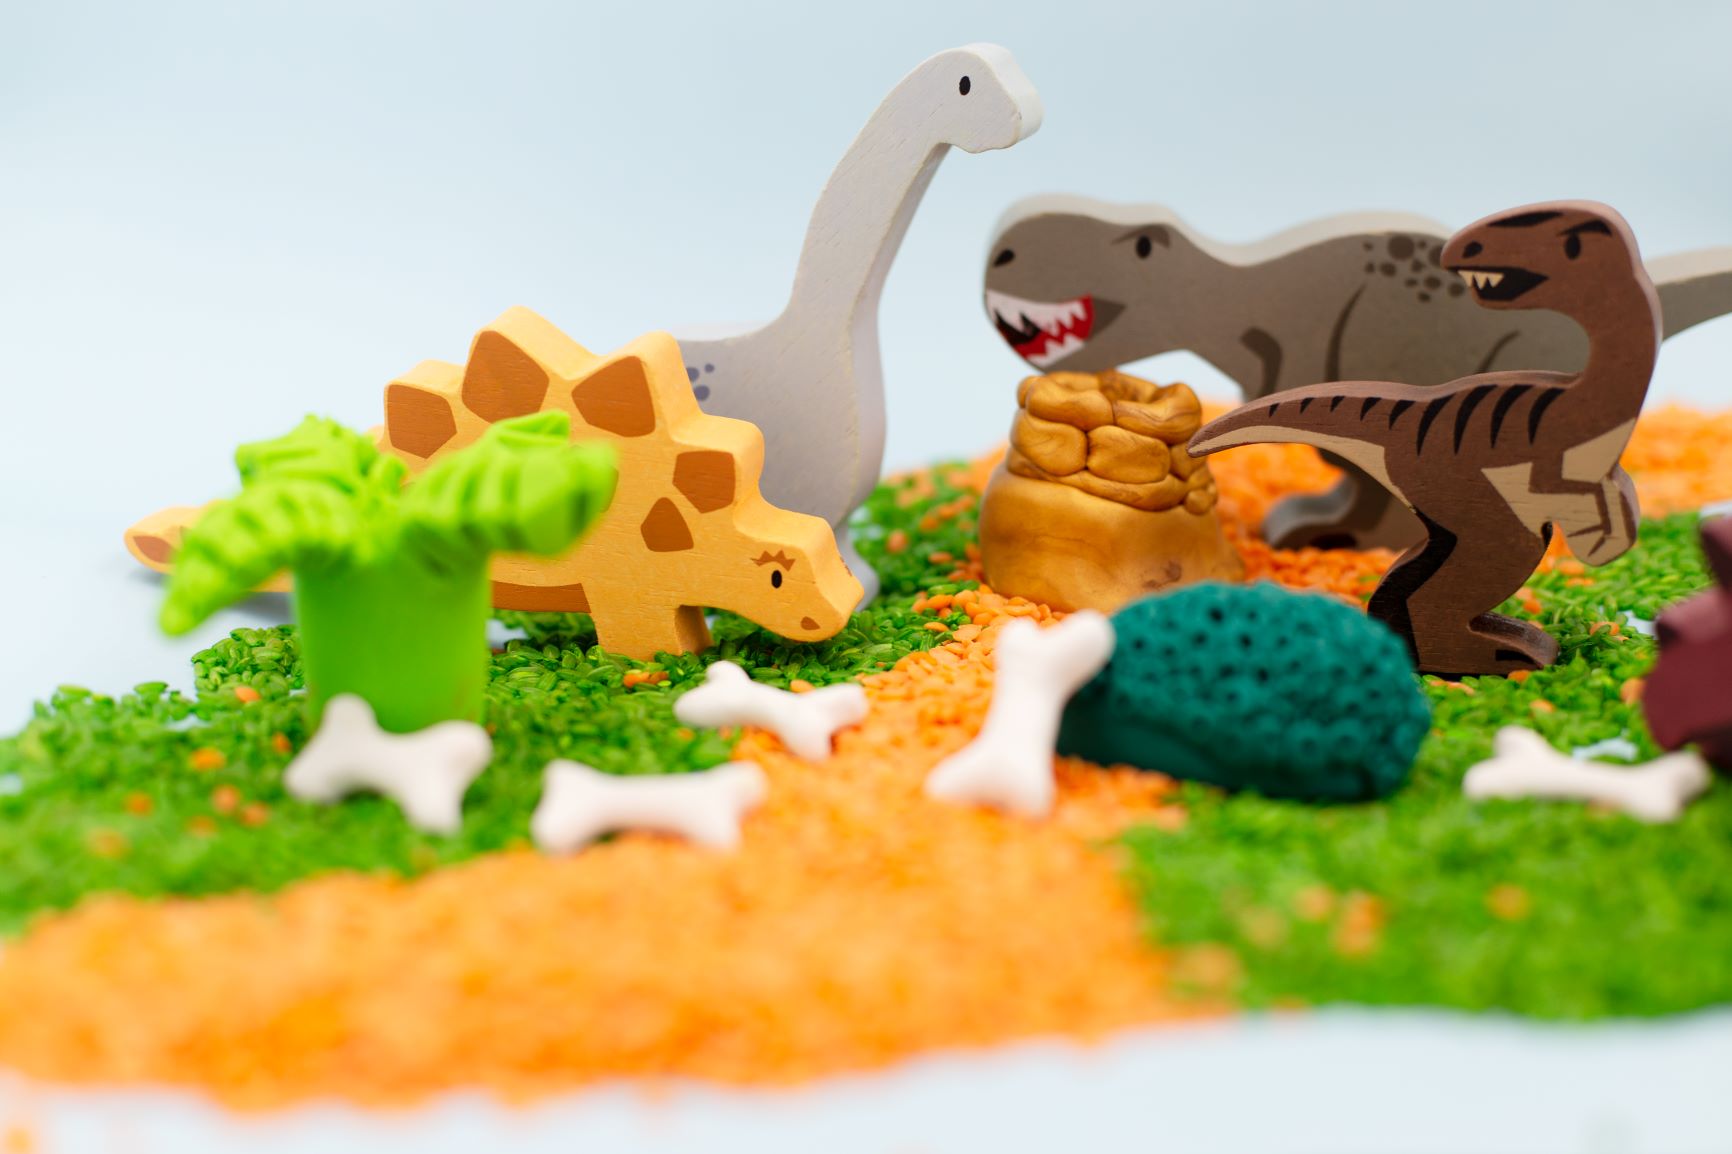 Creative Play - DIY Baked Clay Dinosaur Activity